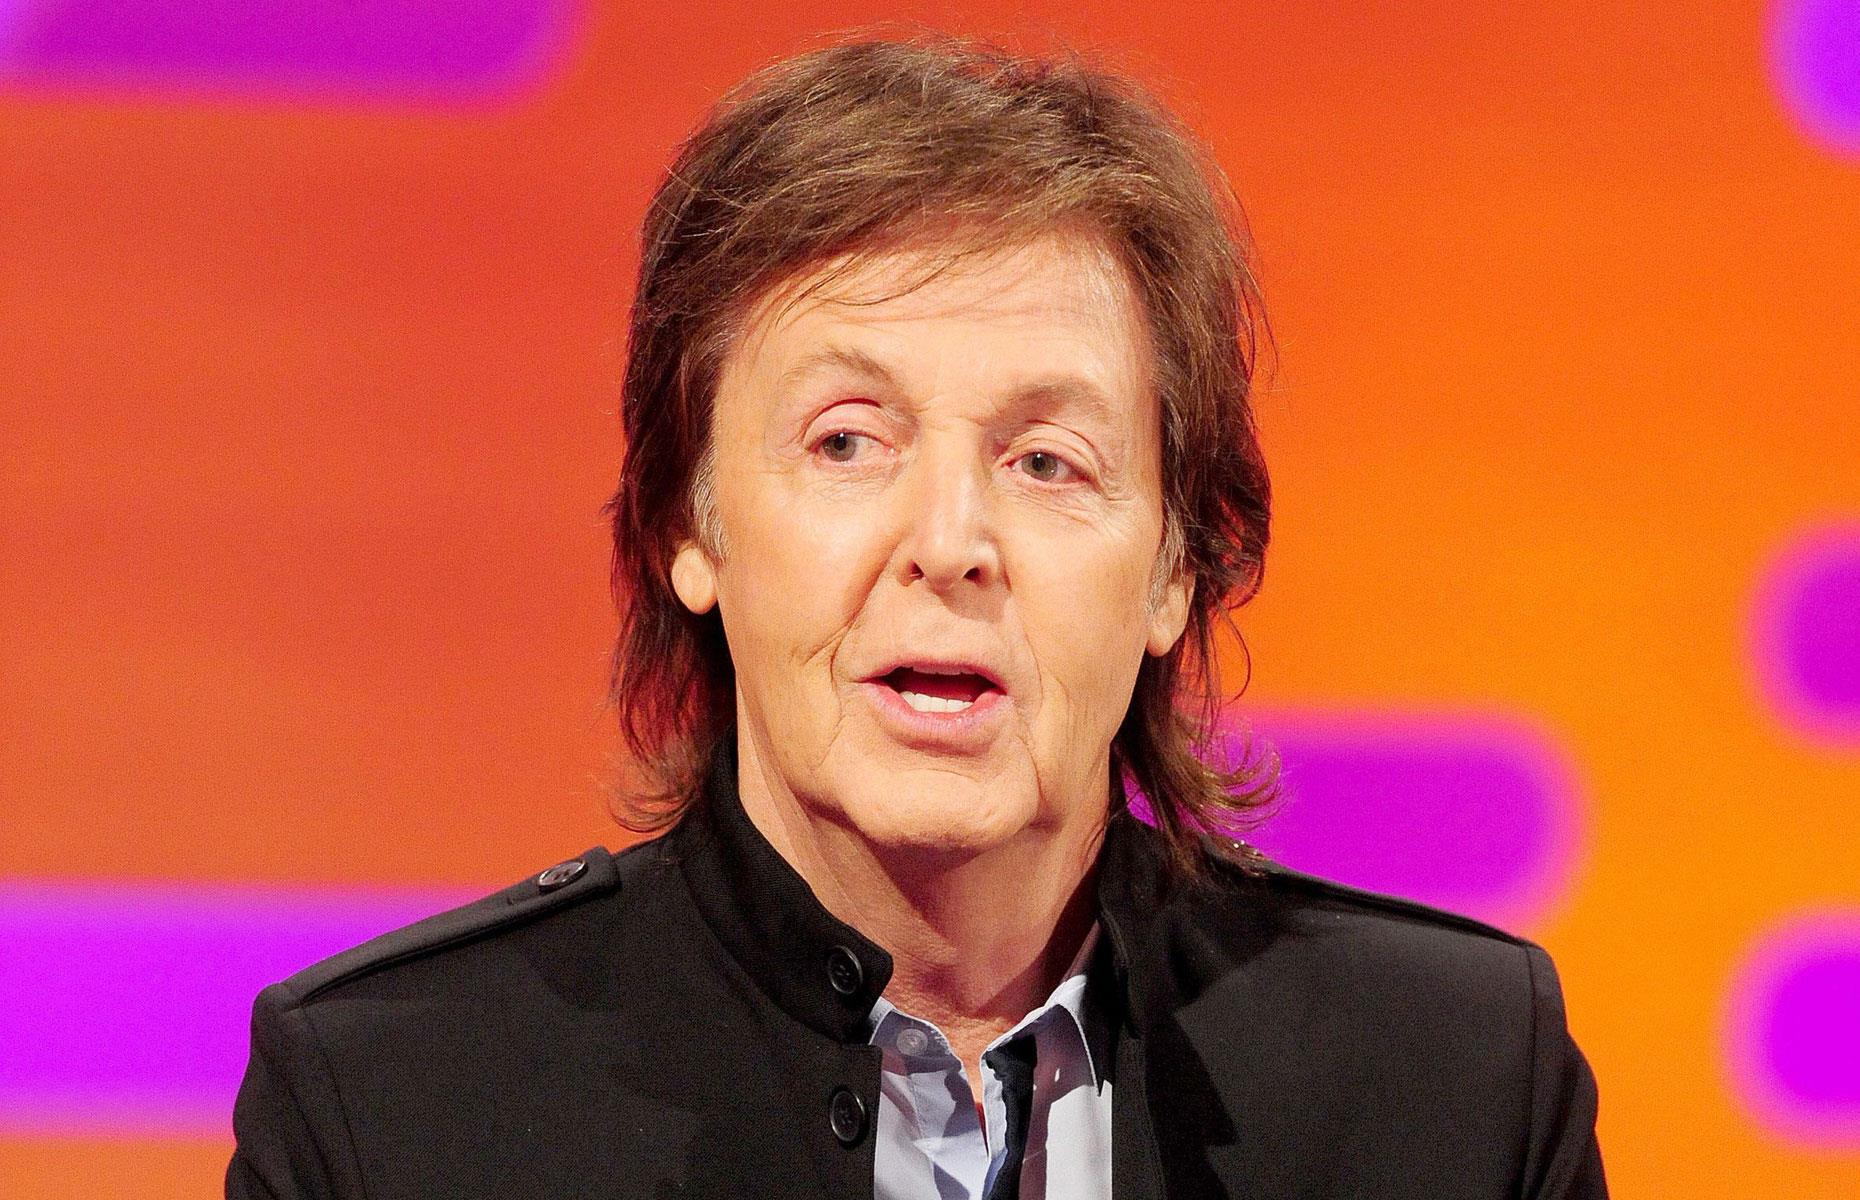 Sir Paul McCartney, 80